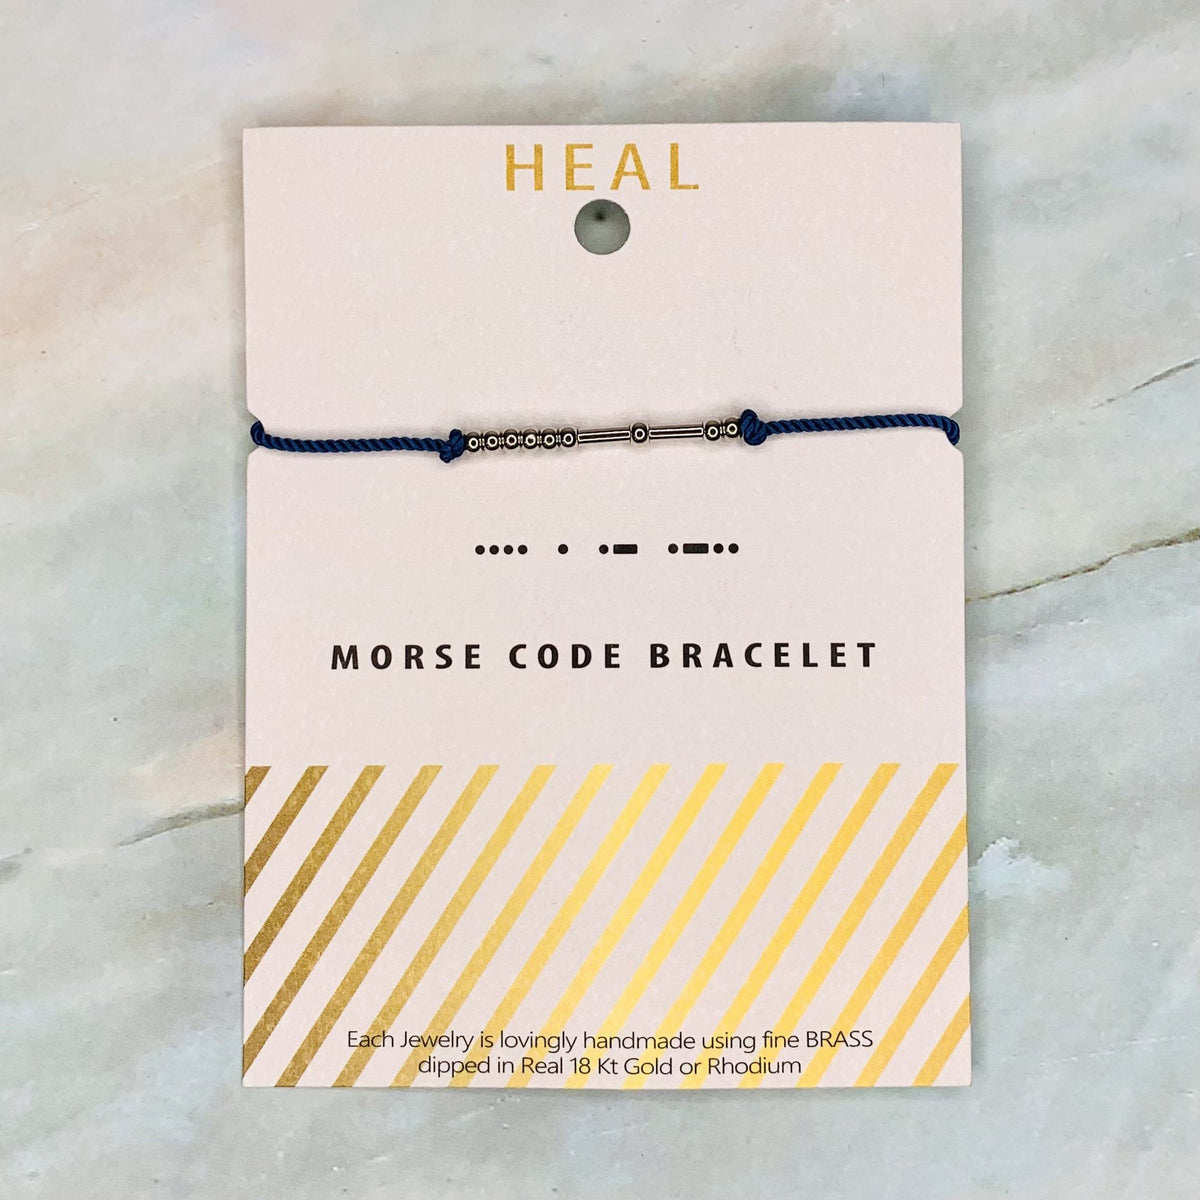 Morse Code Bracelet Jewelry Lauren-Spencer Heal 